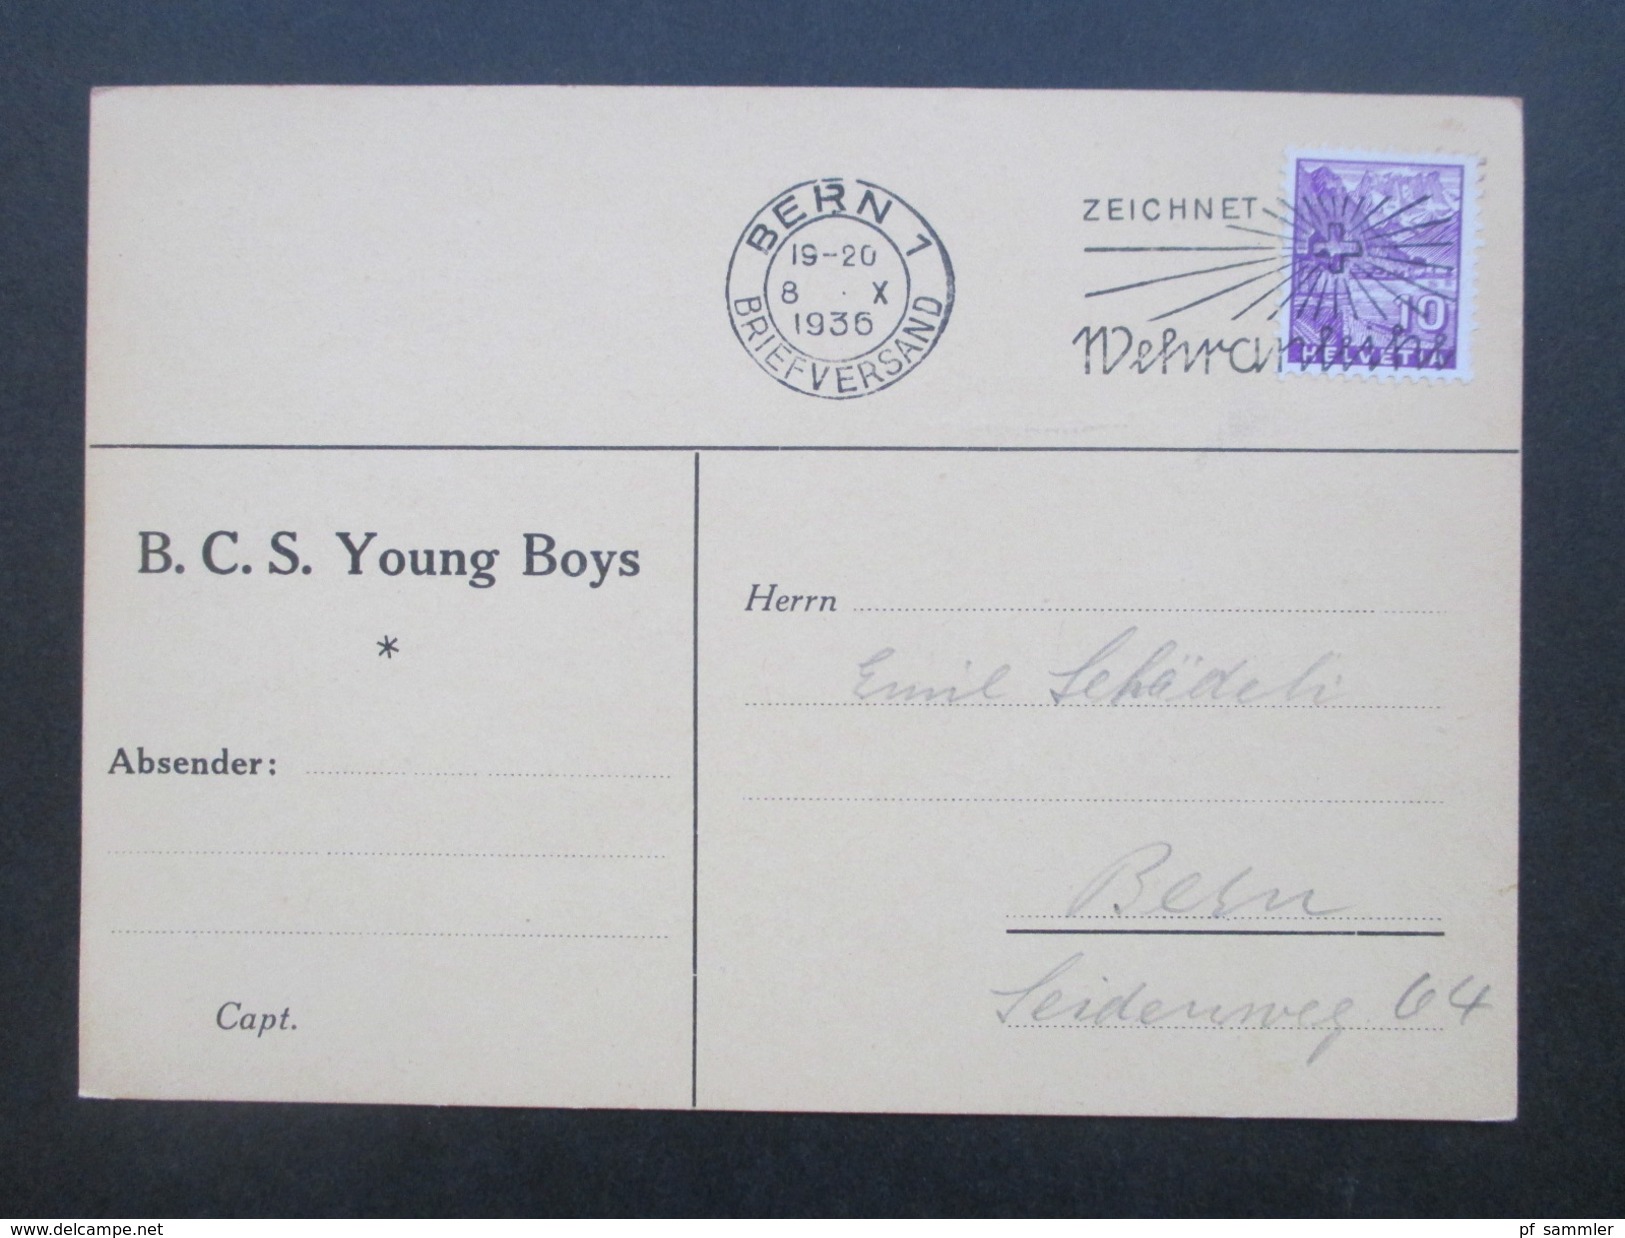 Schweiz 1936 / 40 BSC Young Boys Bern 6 PK/ Bietkarte an einen Spieler! Emil Schädeli. Stürmer! Mit persönlichen Notizen